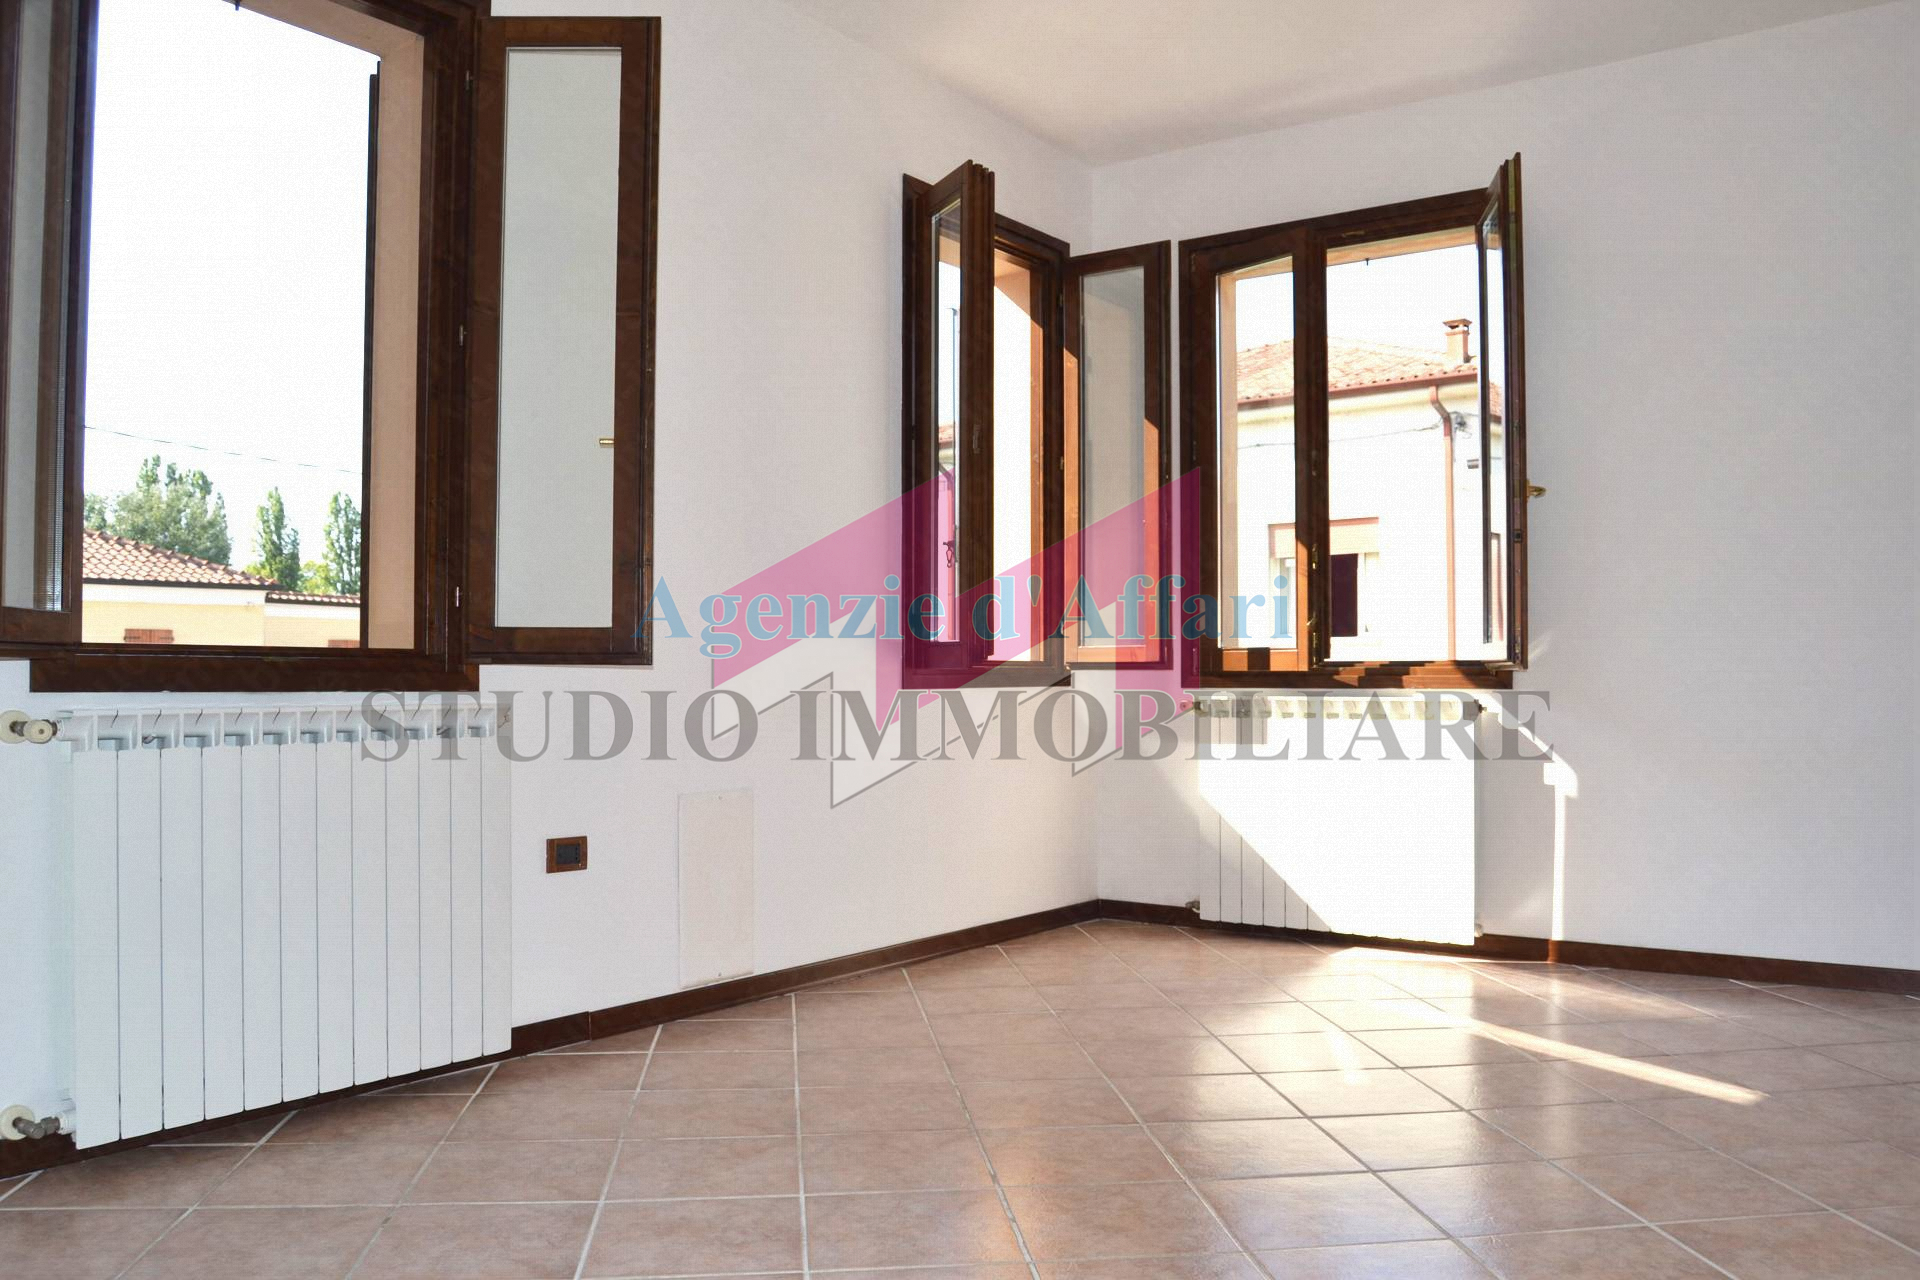 Appartamento in vendita a Castelmassa, 5 locali, prezzo € 75.000 | PortaleAgenzieImmobiliari.it